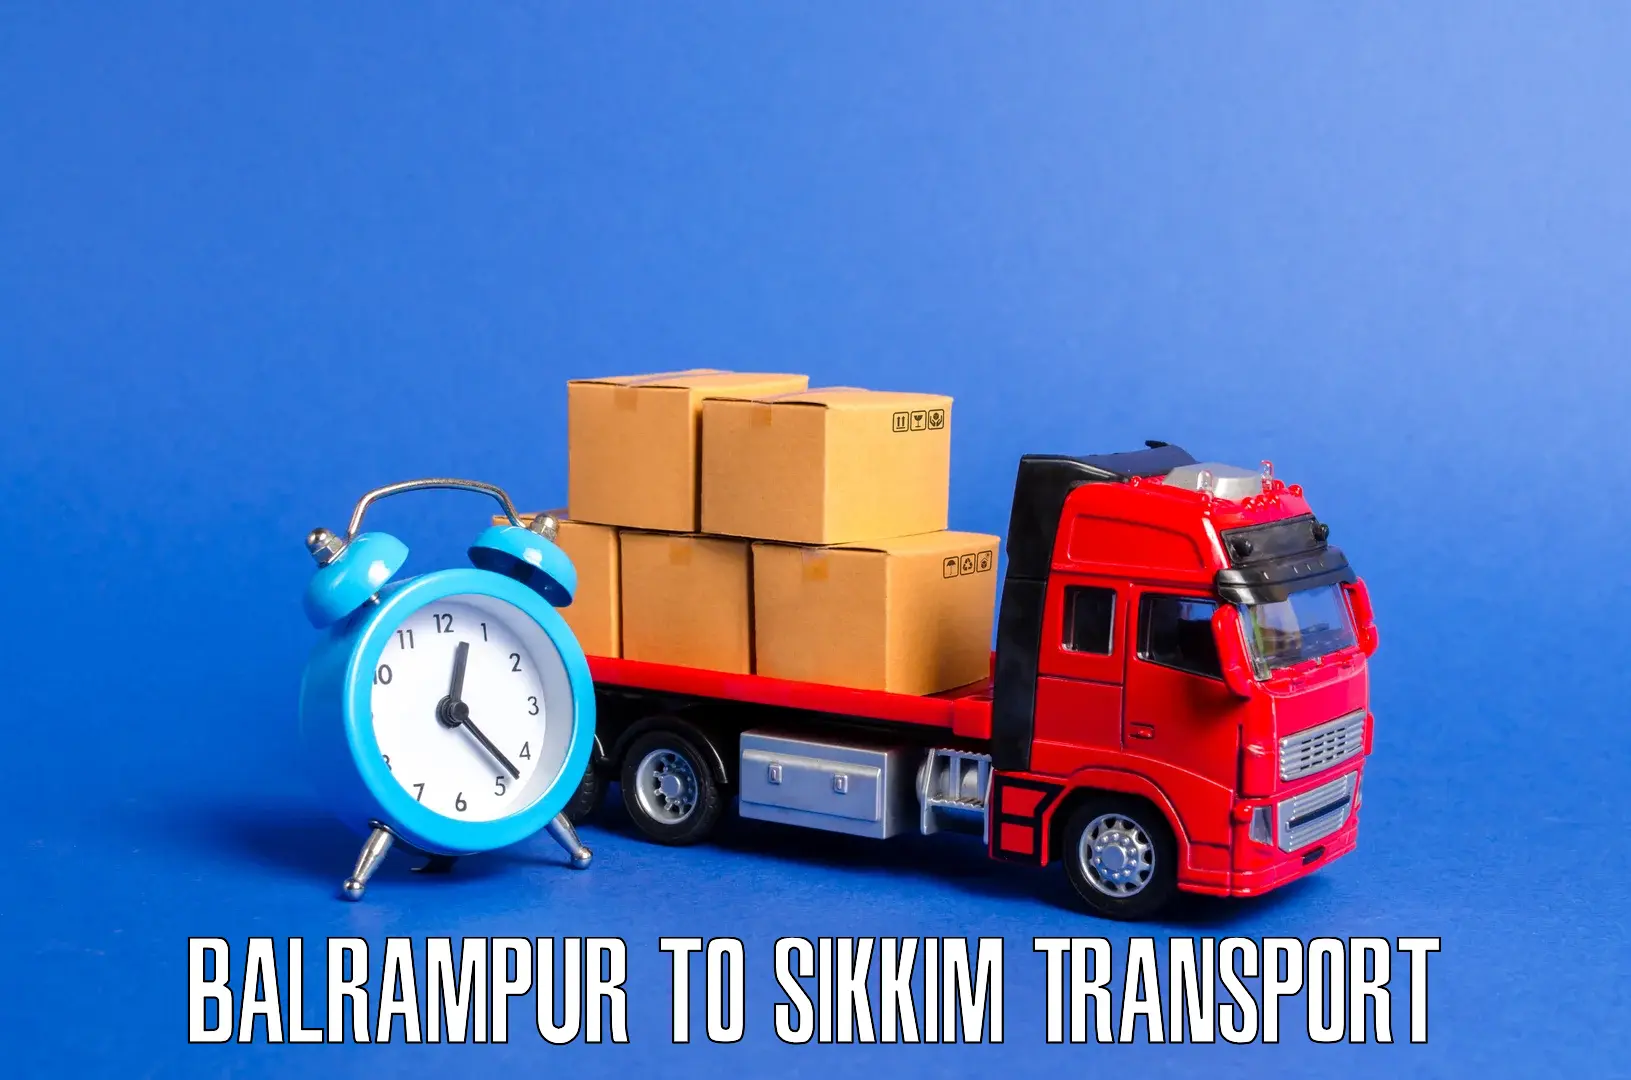 Express transport services Balrampur to Mangan